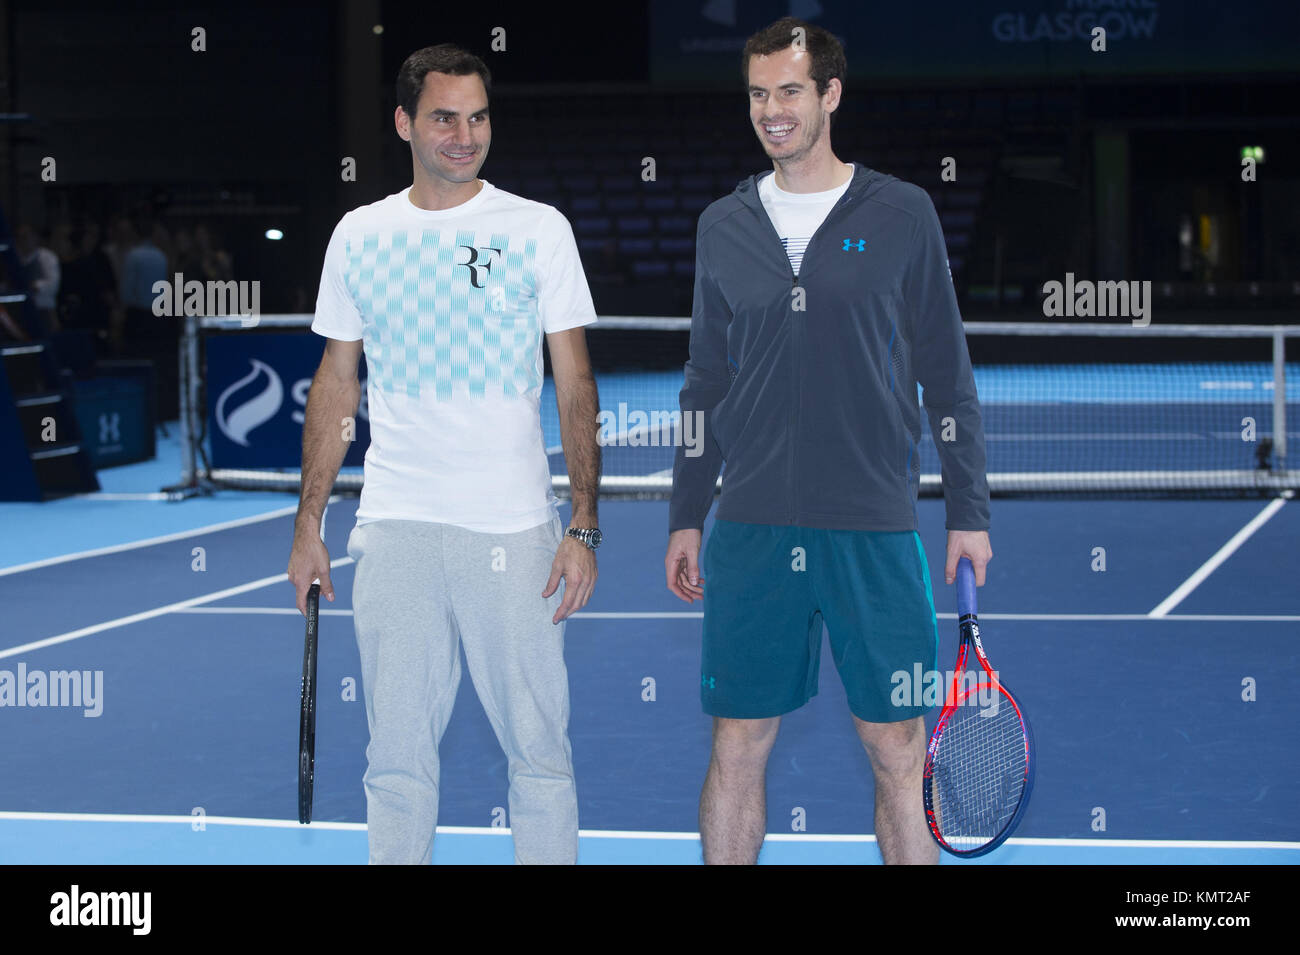 Le joueur de tennis Écossais Andy Murray joue contre Roger Federer dans le  cadre de 'Andy Murray en direct" pour recueillir des fonds pour des  organismes de bienfaisance. avec : Andy Murray,